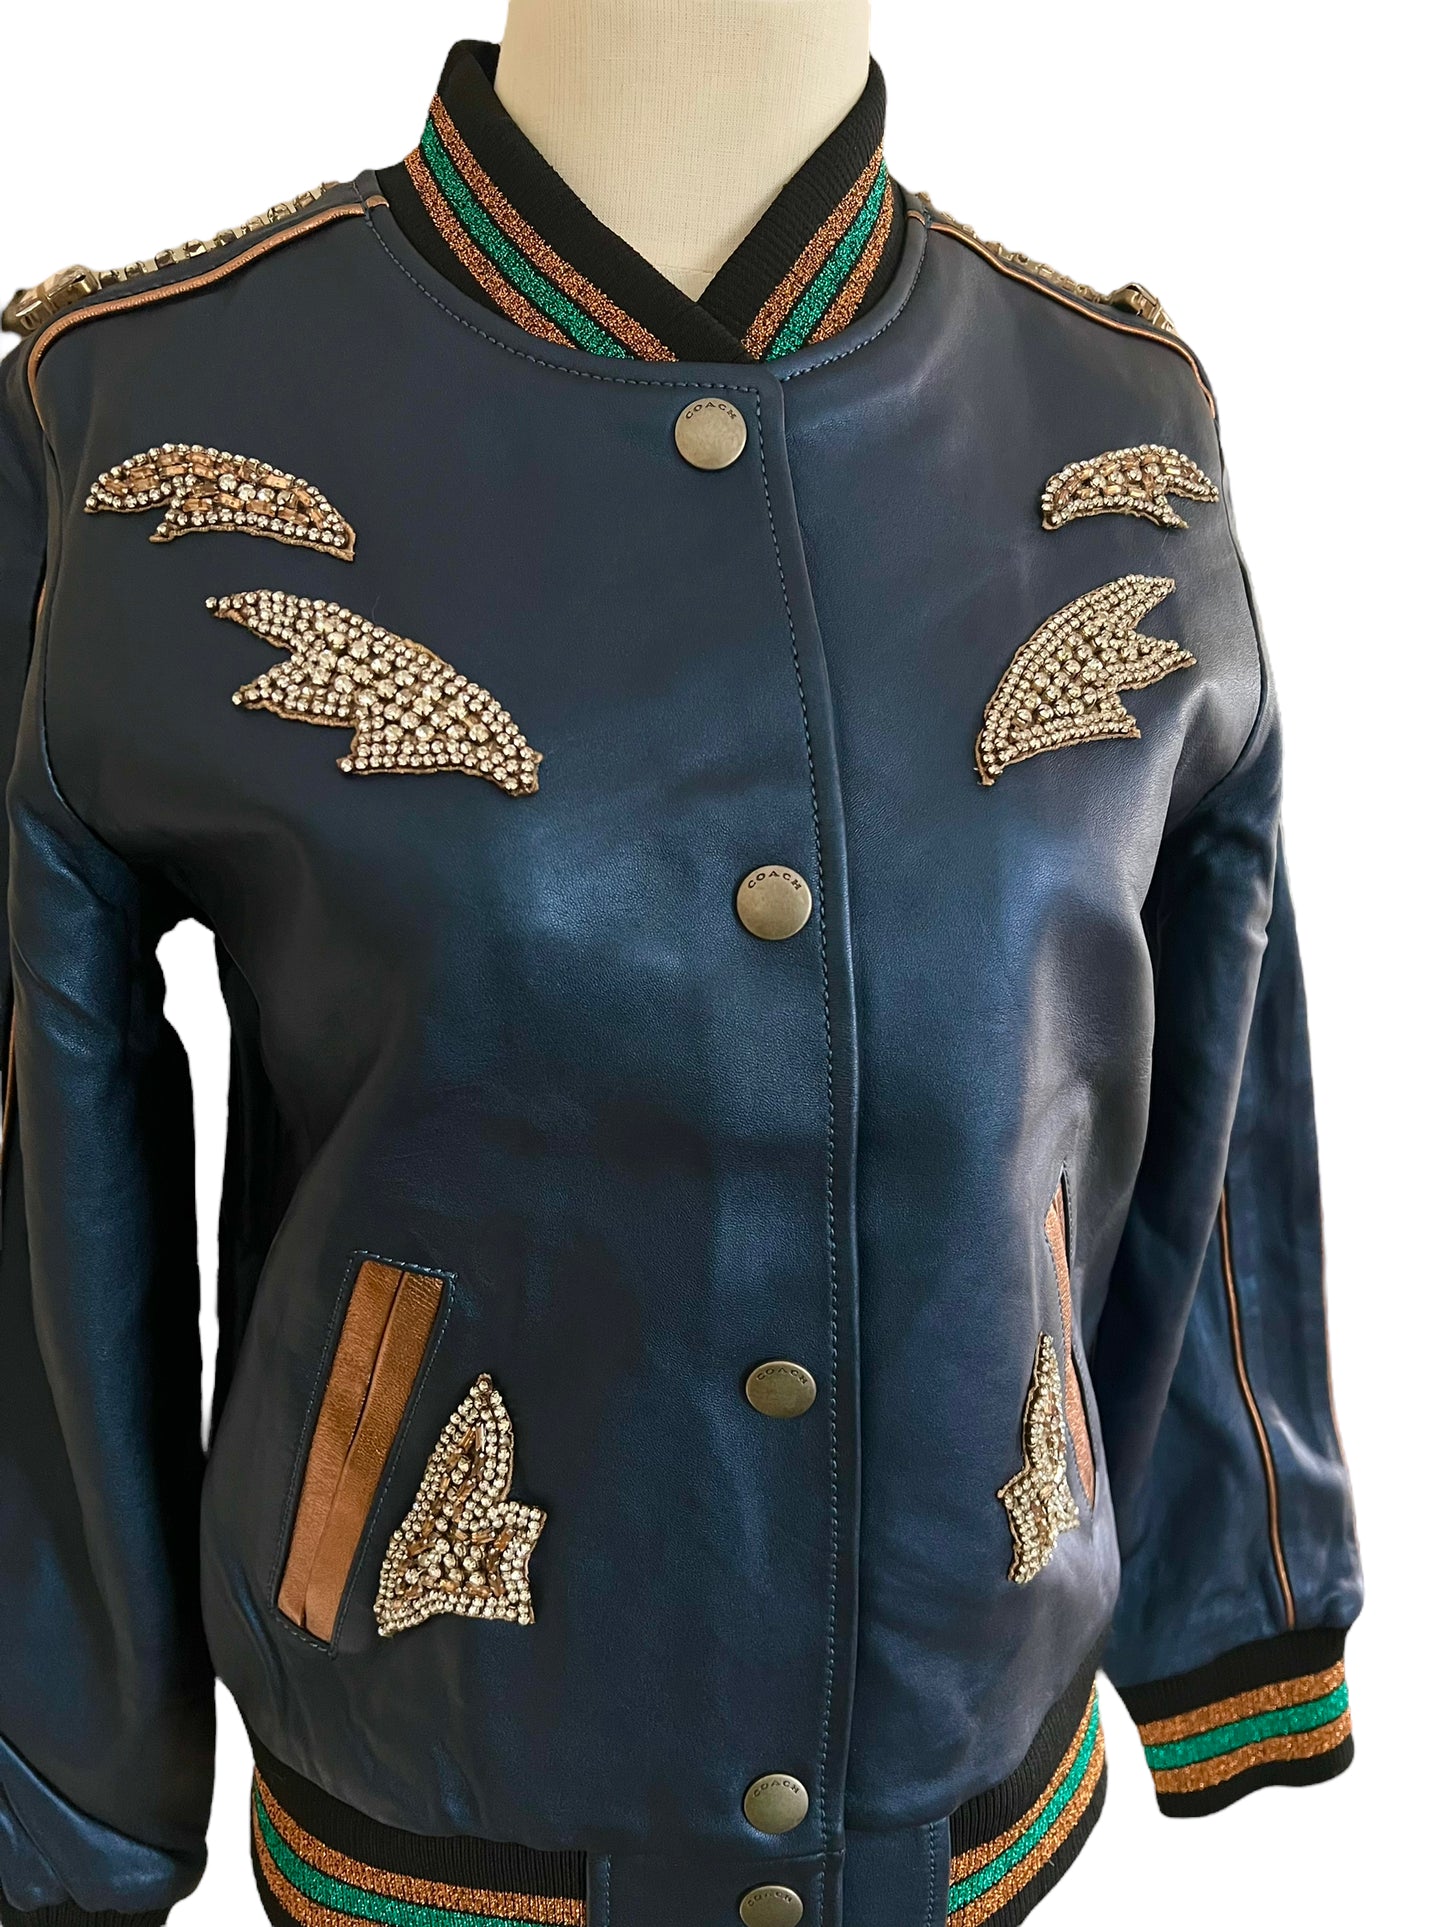 Coach Size 2 Metallic Leather Cadet Blue Shrunken Leather Embellished Varsity Jacket